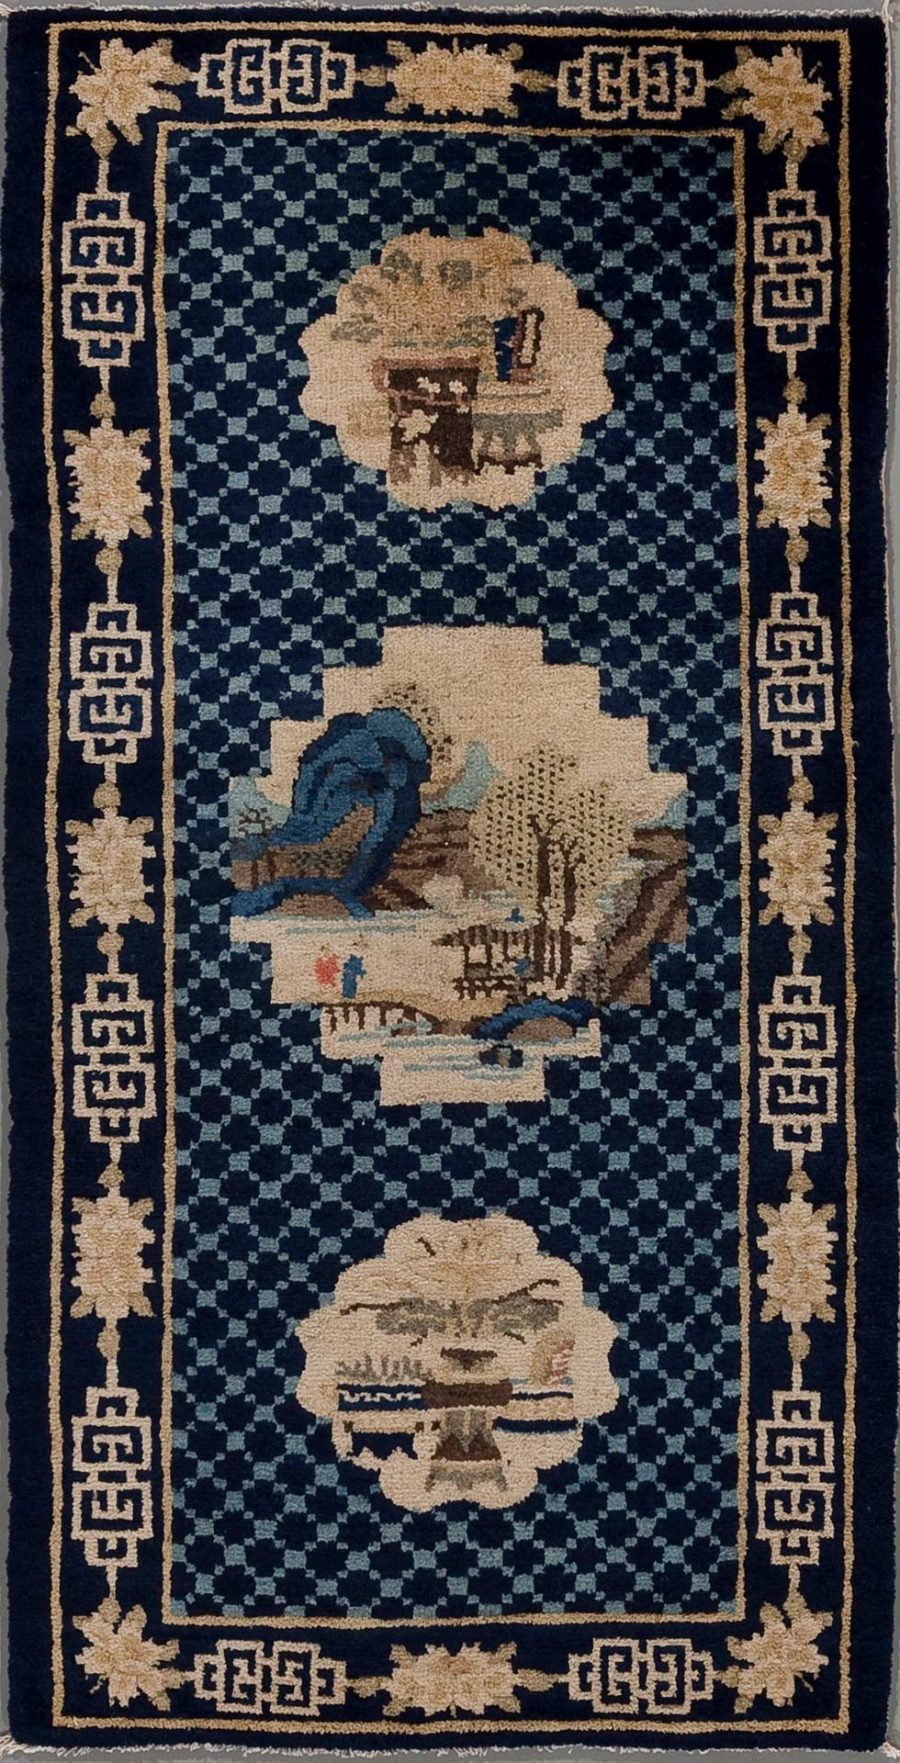 Traditioneller, vermutlich chinesischer Teppich aufrecht stehend, mit dunkelblauem Hintergrund und beigefarbenen Mustern, umfasst von geometrischem Randmuster. Zentrale Motive sind drei runde Medaillons mit asiatisch anmutenden Landschaftsszenen, darunter Bäume und Berge, sowie eine Figur auf einem der Medaillons.